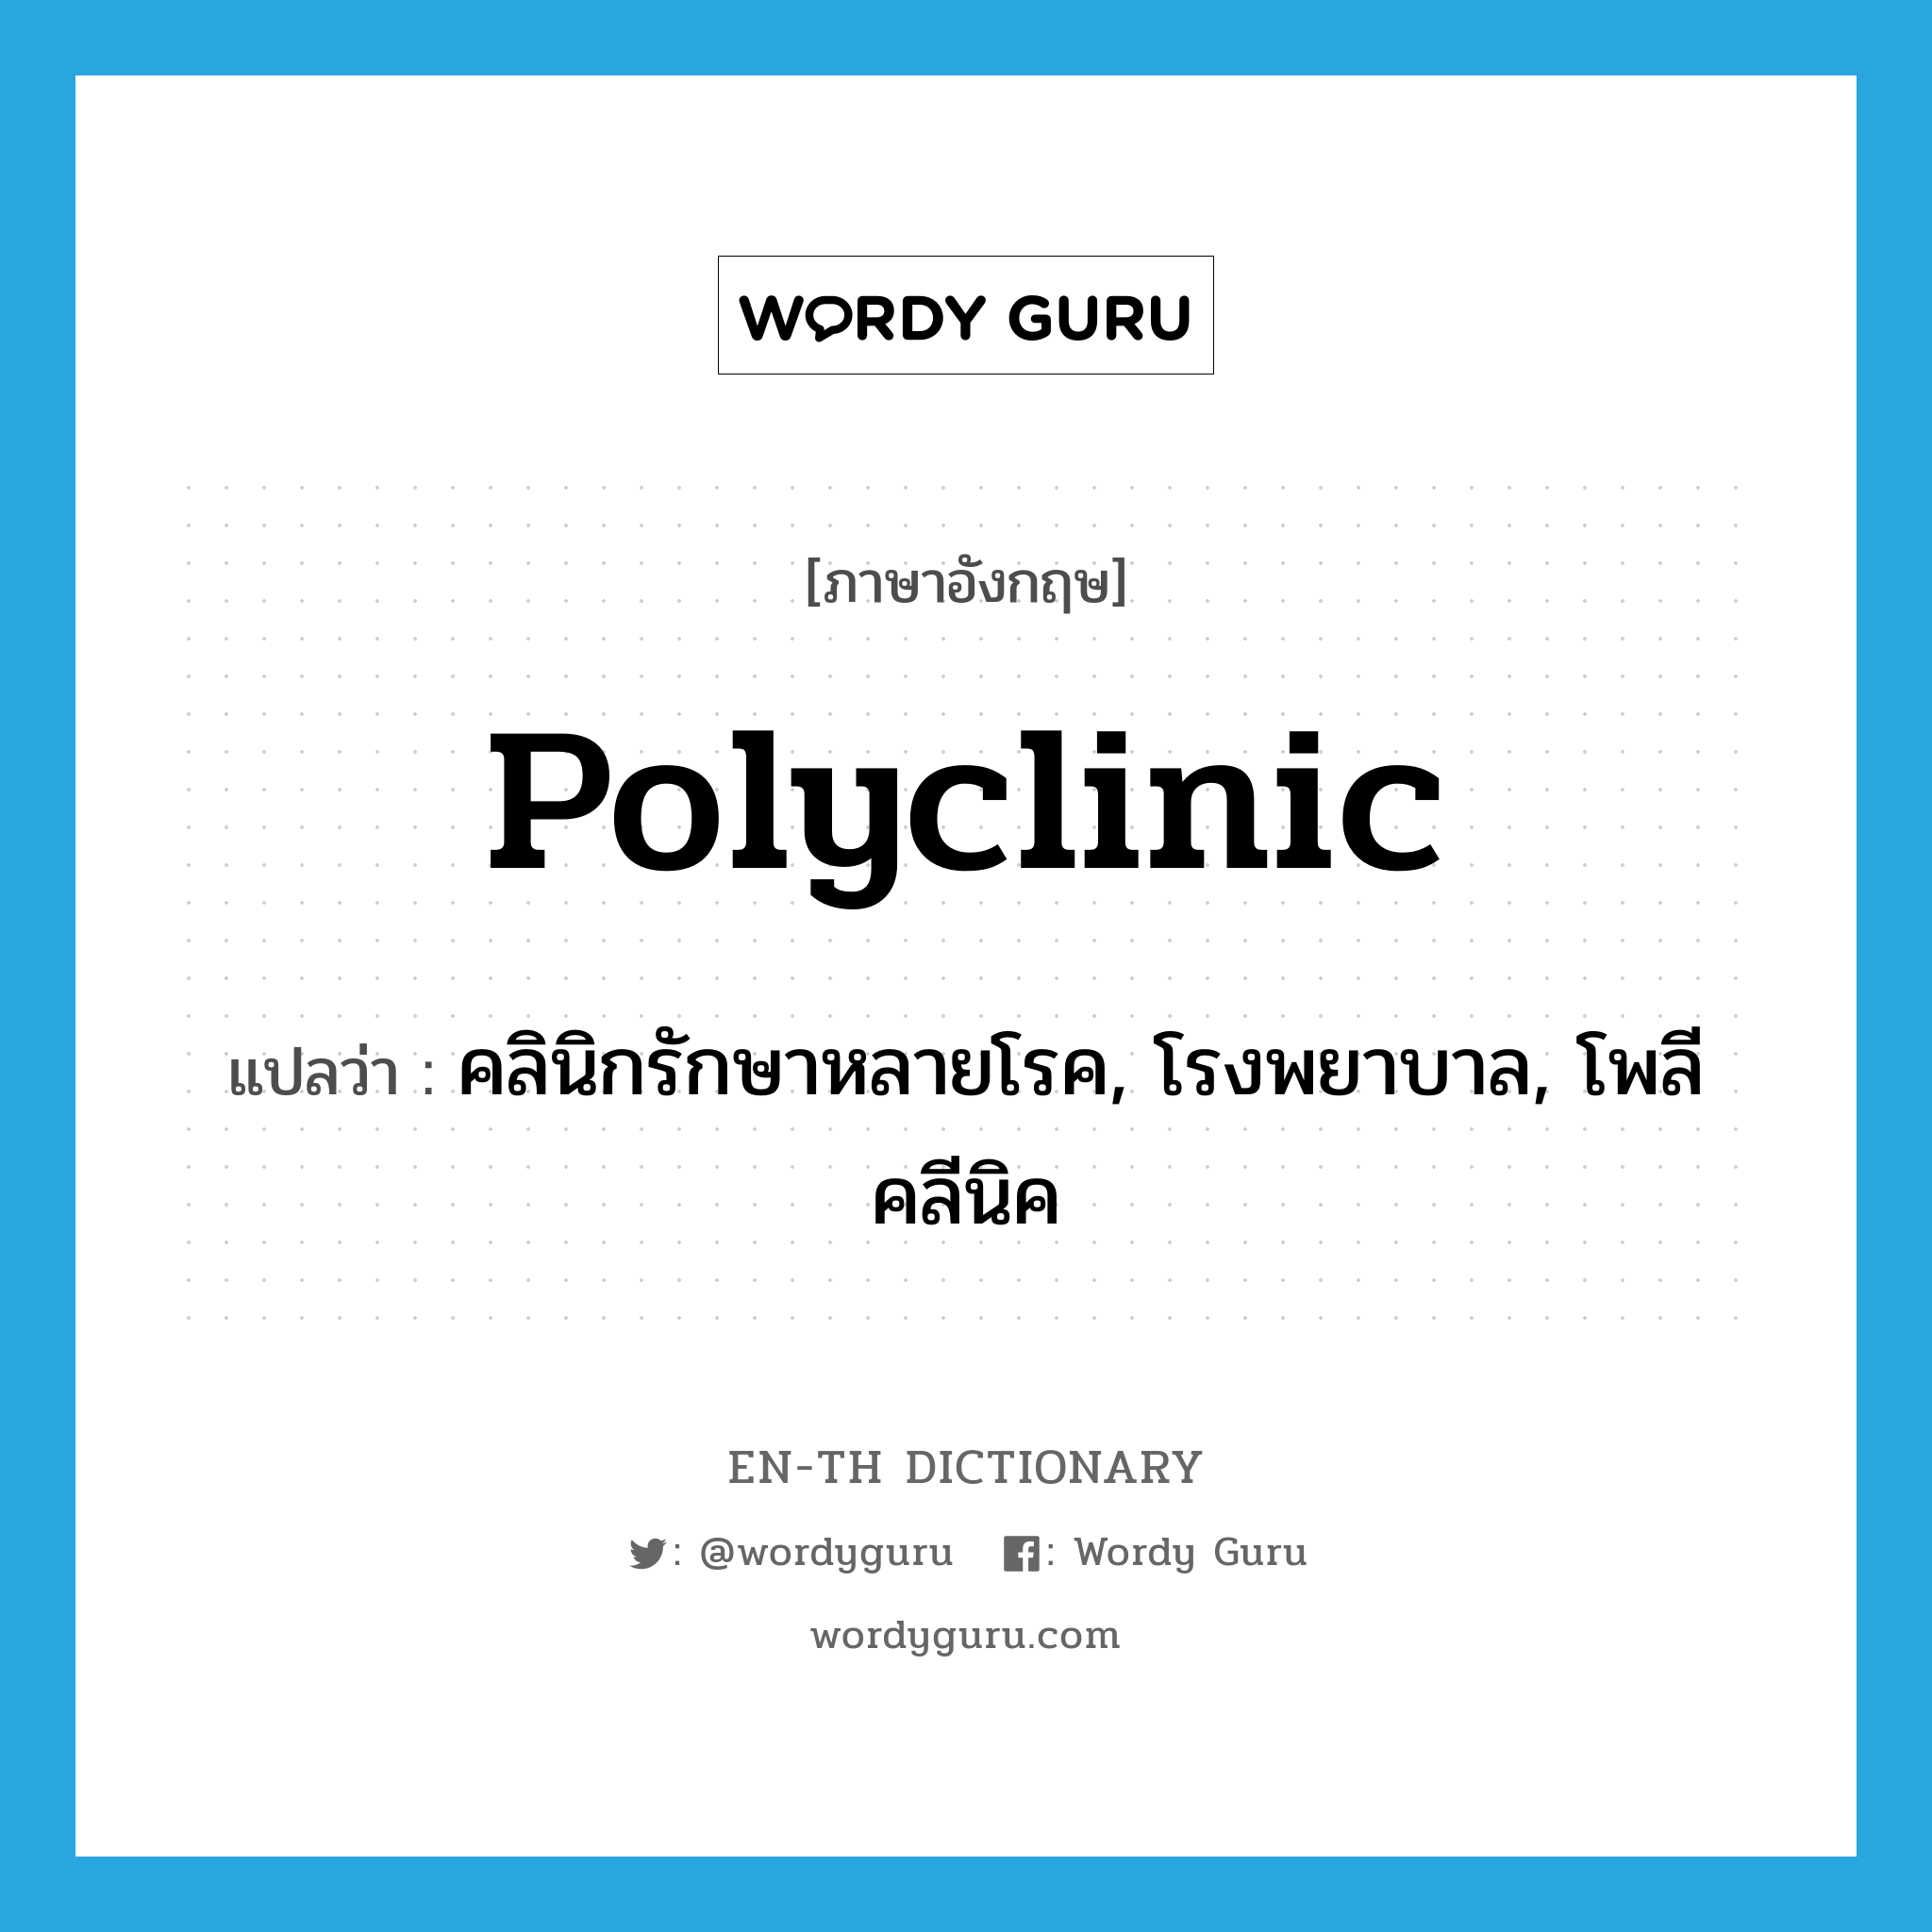 polyclinic แปลว่า?, คำศัพท์ภาษาอังกฤษ polyclinic แปลว่า คลินิกรักษาหลายโรค, โรงพยาบาล, โพลีคลีนิค ประเภท N หมวด N